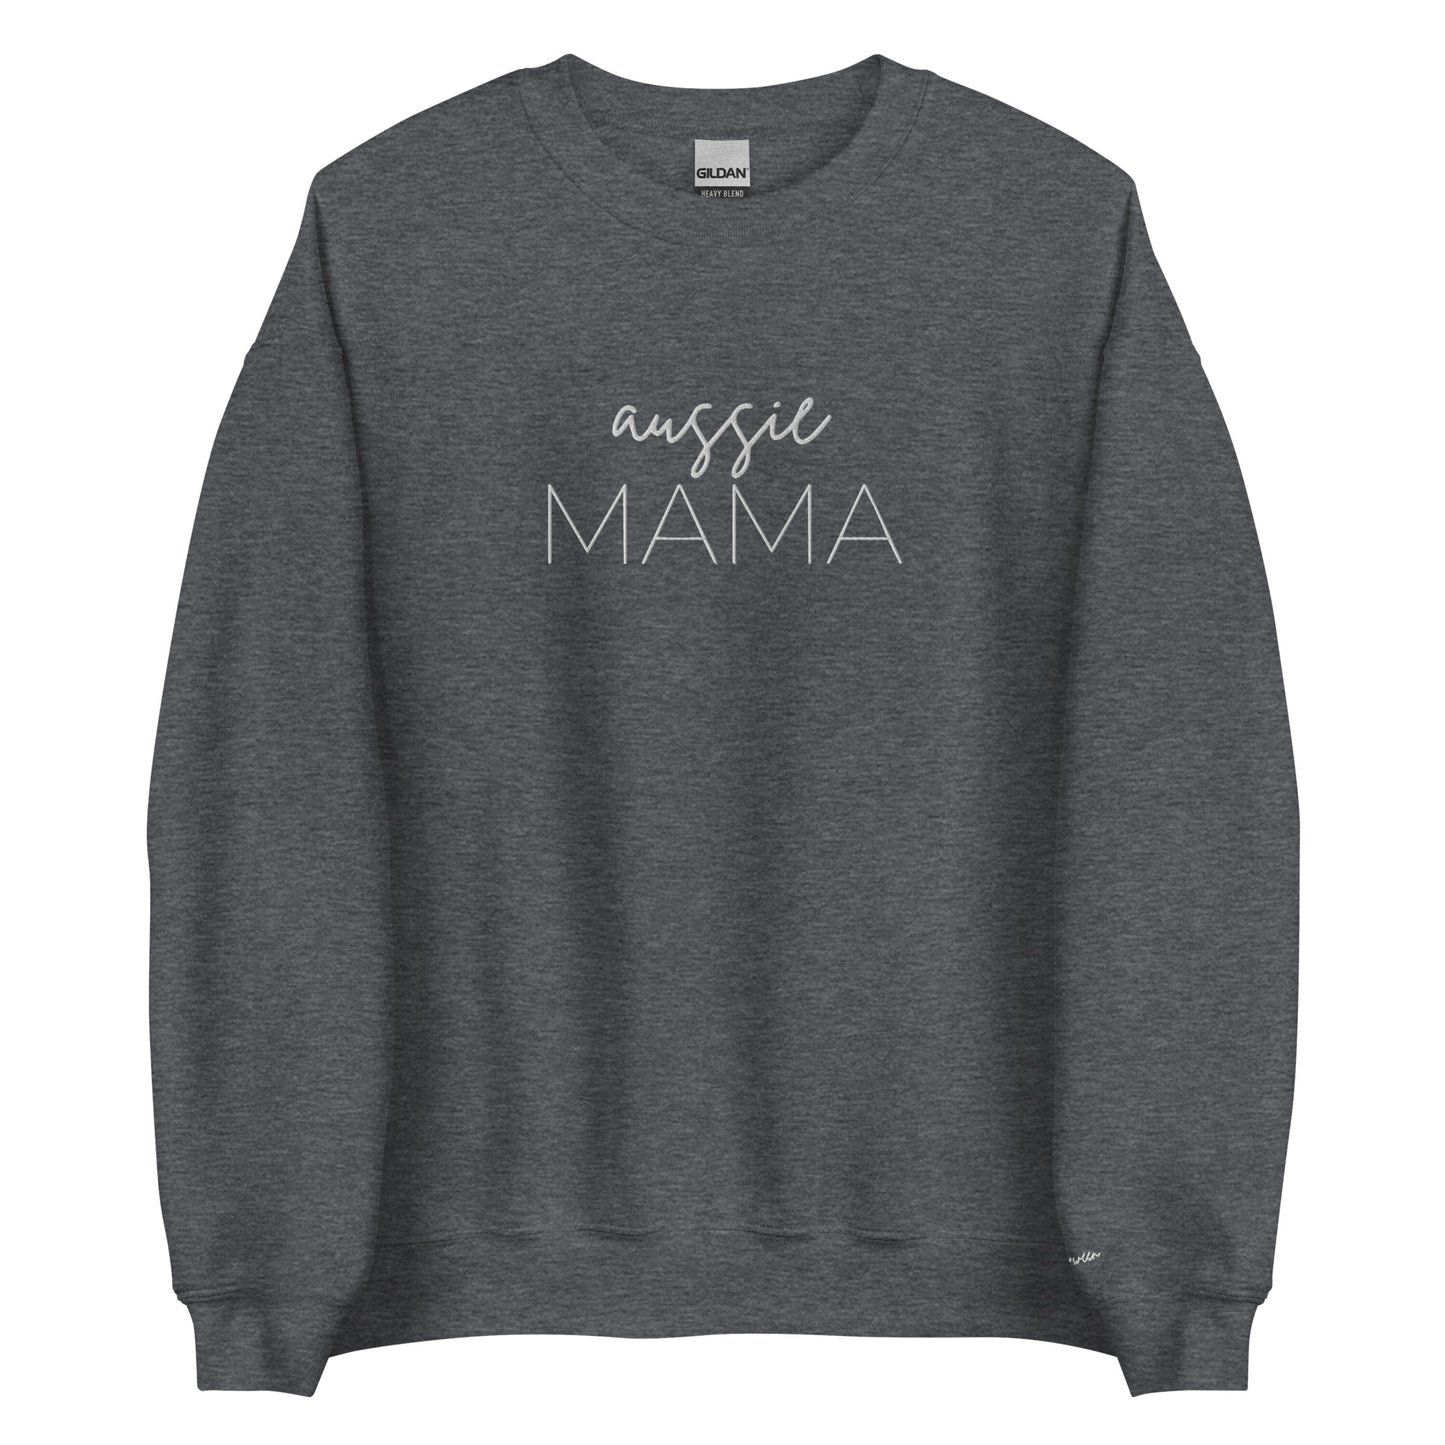 Embroidered Sweatshirt - AUSSIE MAMA